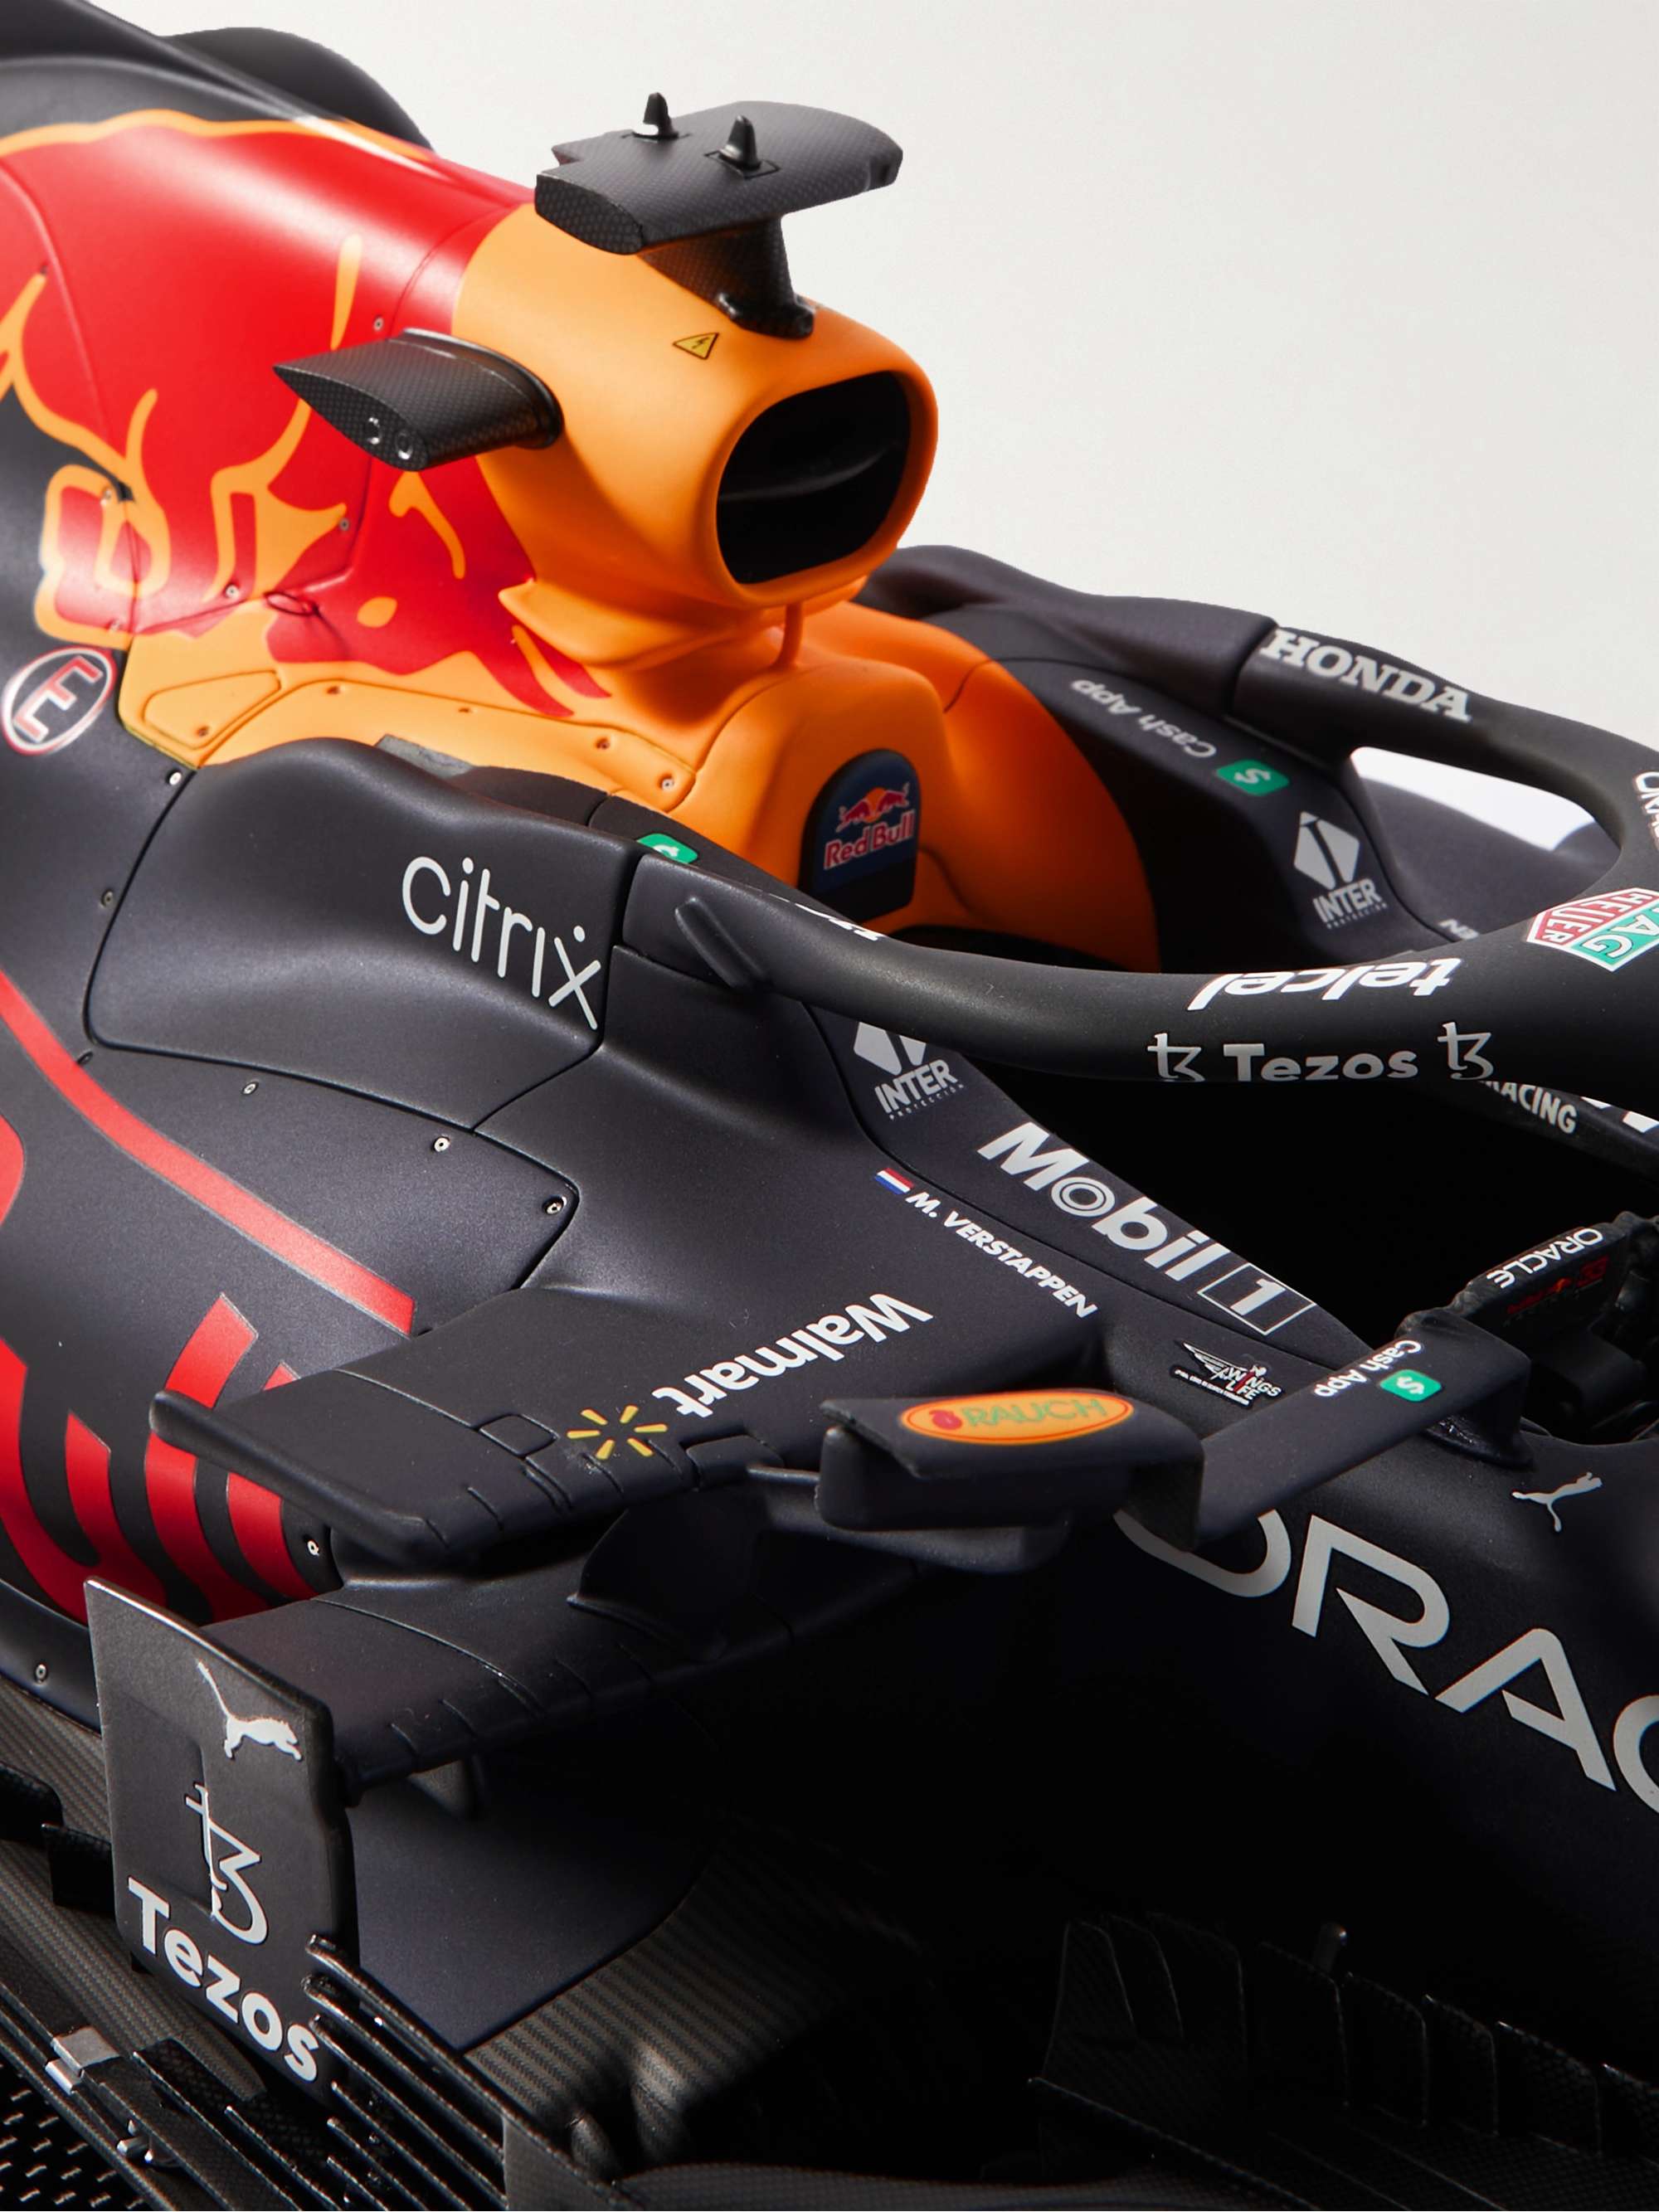 AMALGAM COLLECTION Red Bull Racing Honda RB16B Max Verstappen (2021) 1:18  Model Car for Men | MR PORTER